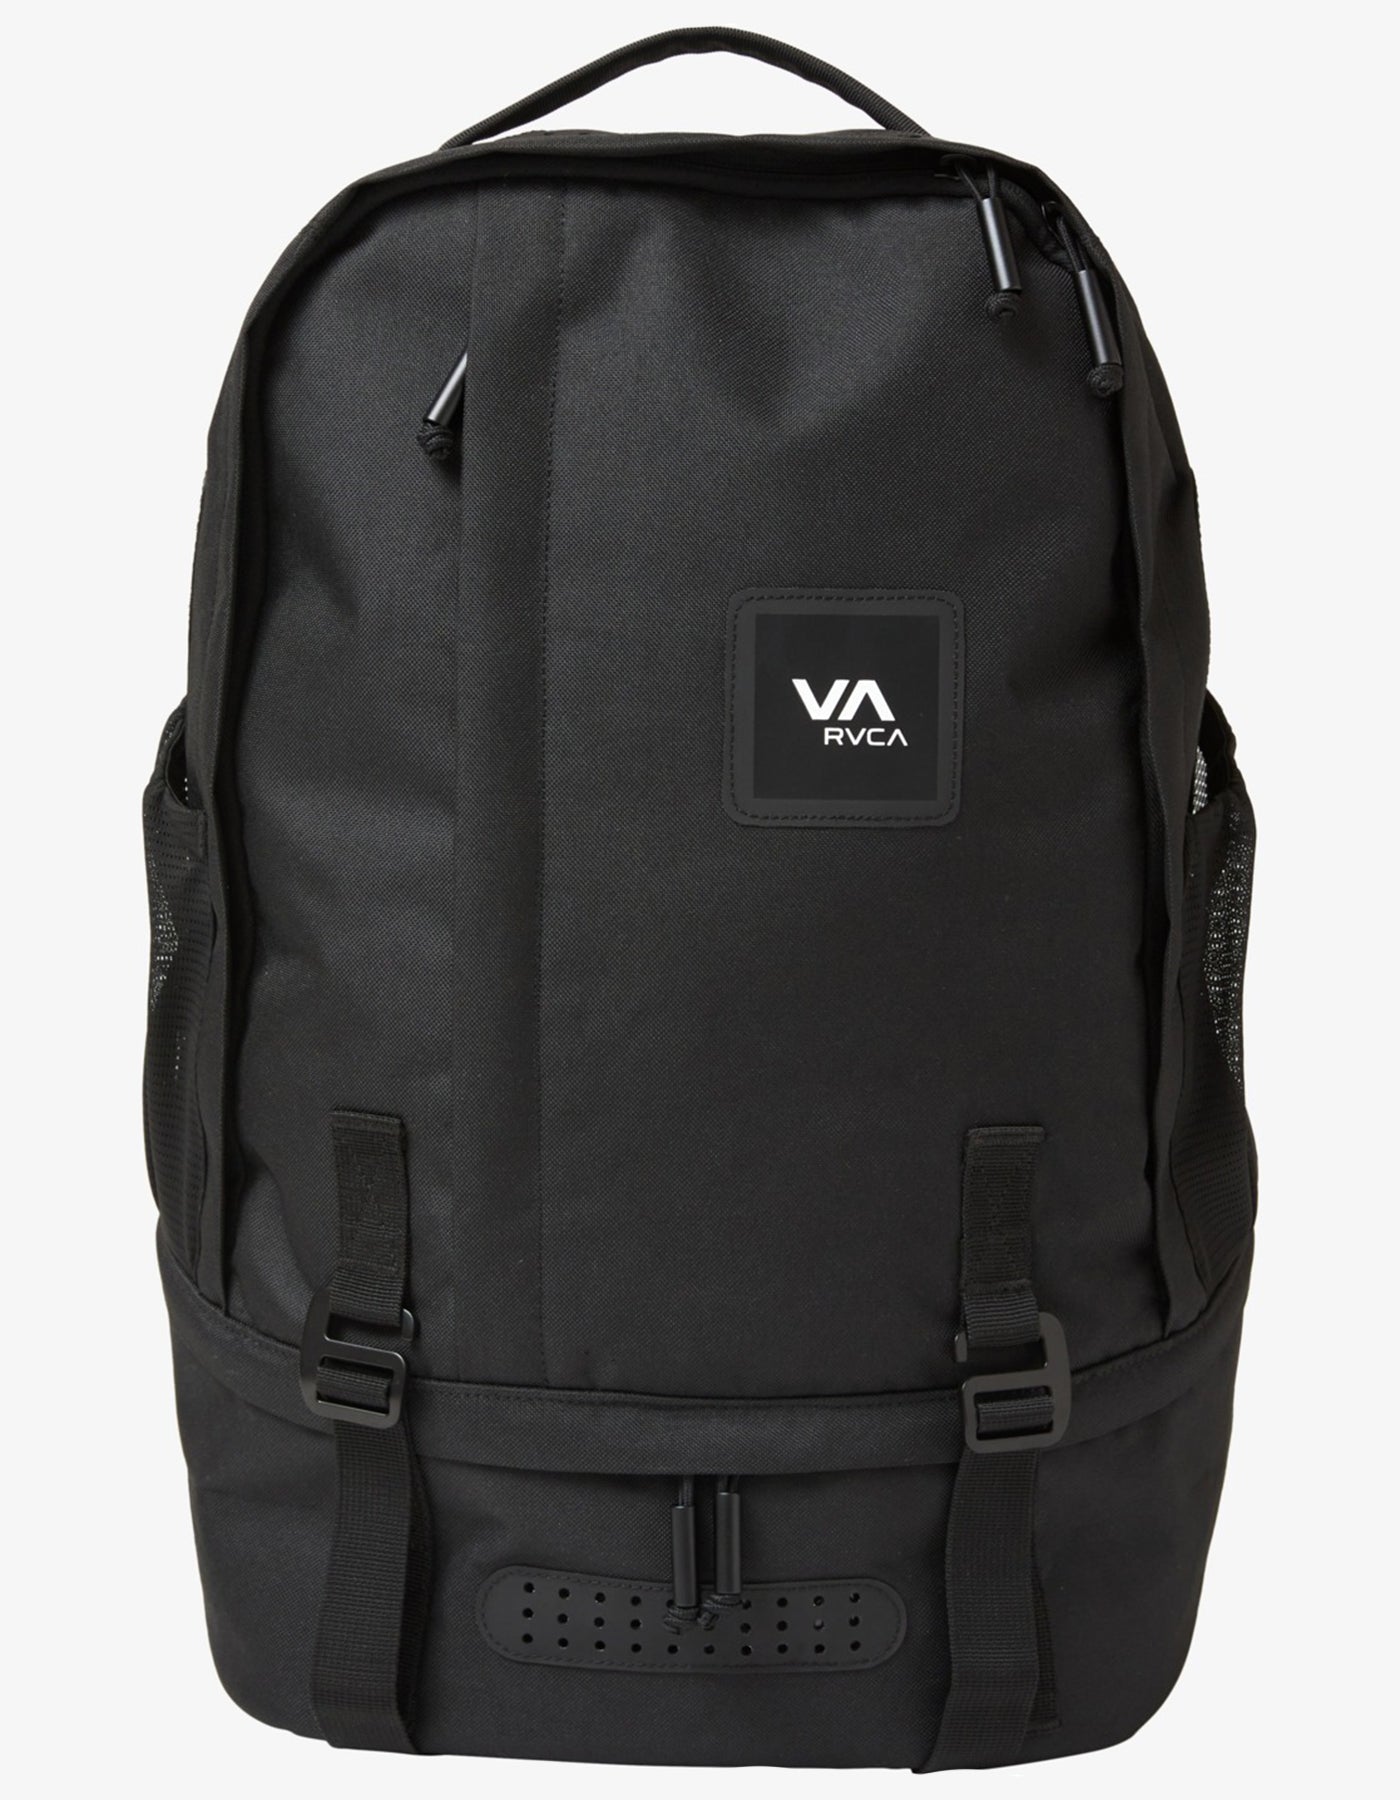 RVCA VA Sport Backpack